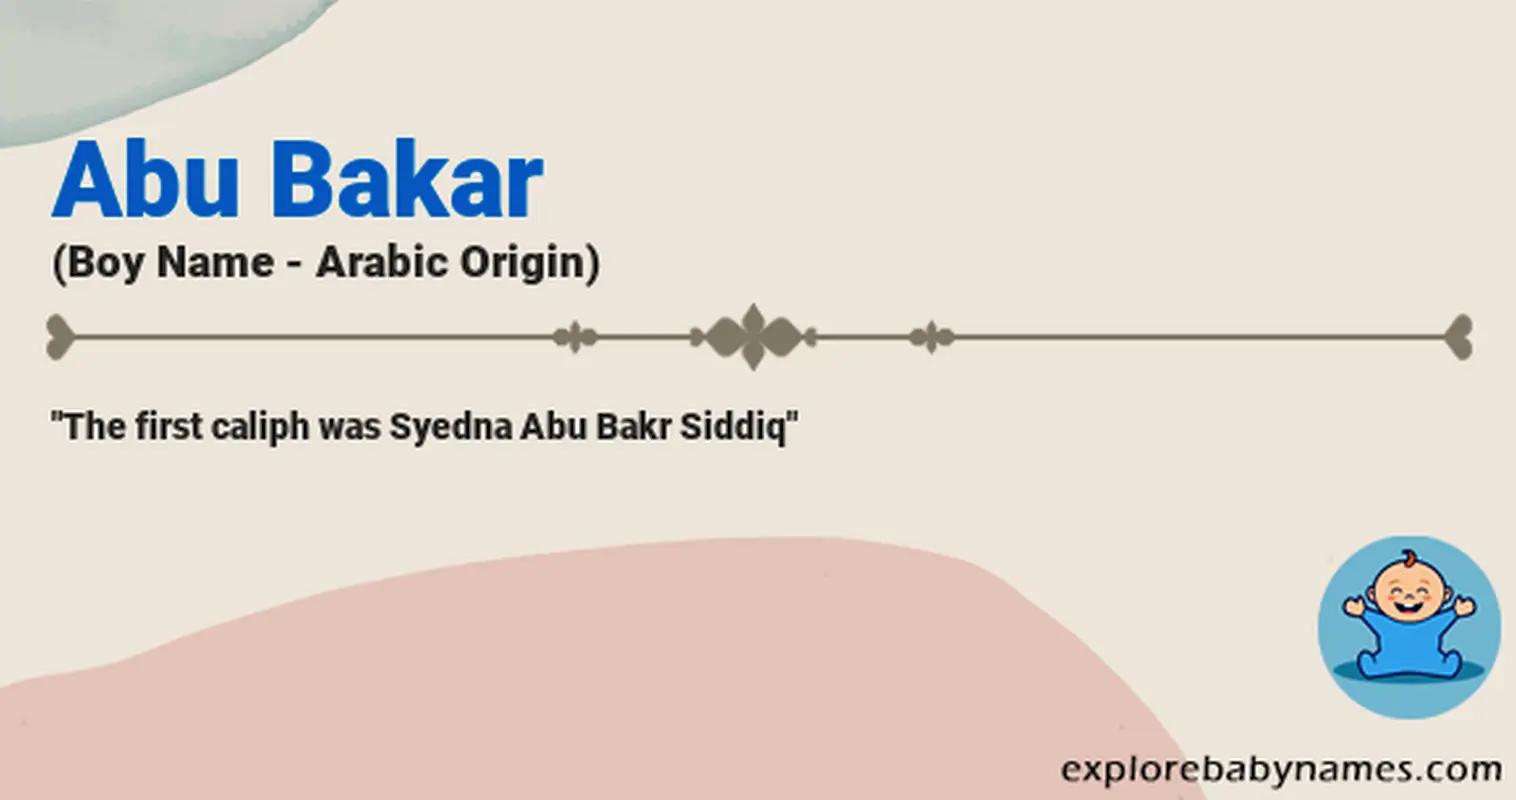 Meaning of Abu Bakar